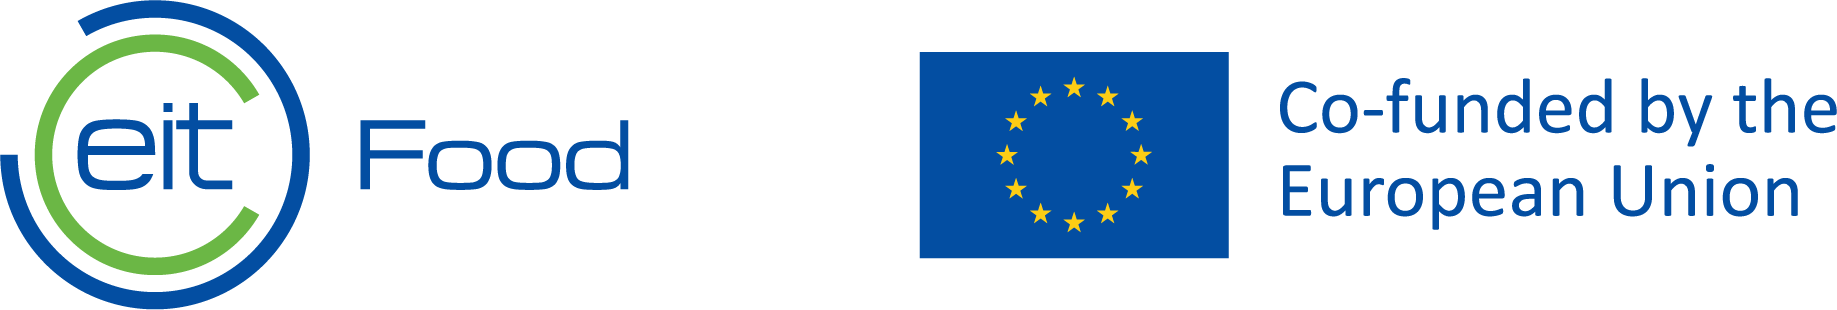 EIT Food + EU Logo RGB Landscape